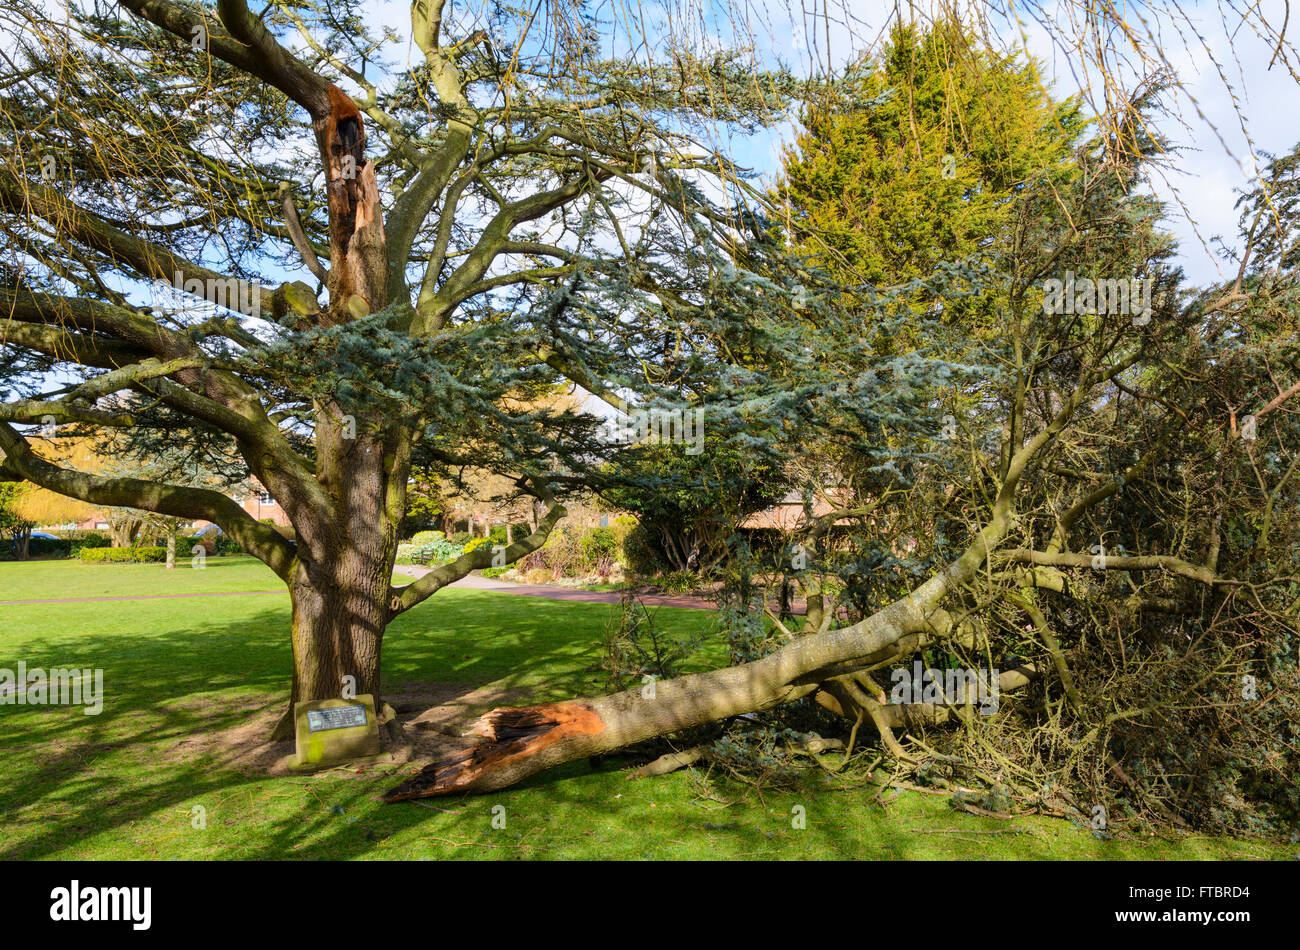 Branche d'un arbre cassé du tronc principal pendant l'gales dans le West Sussex, Angleterre, Royaume-Uni. Banque D'Images